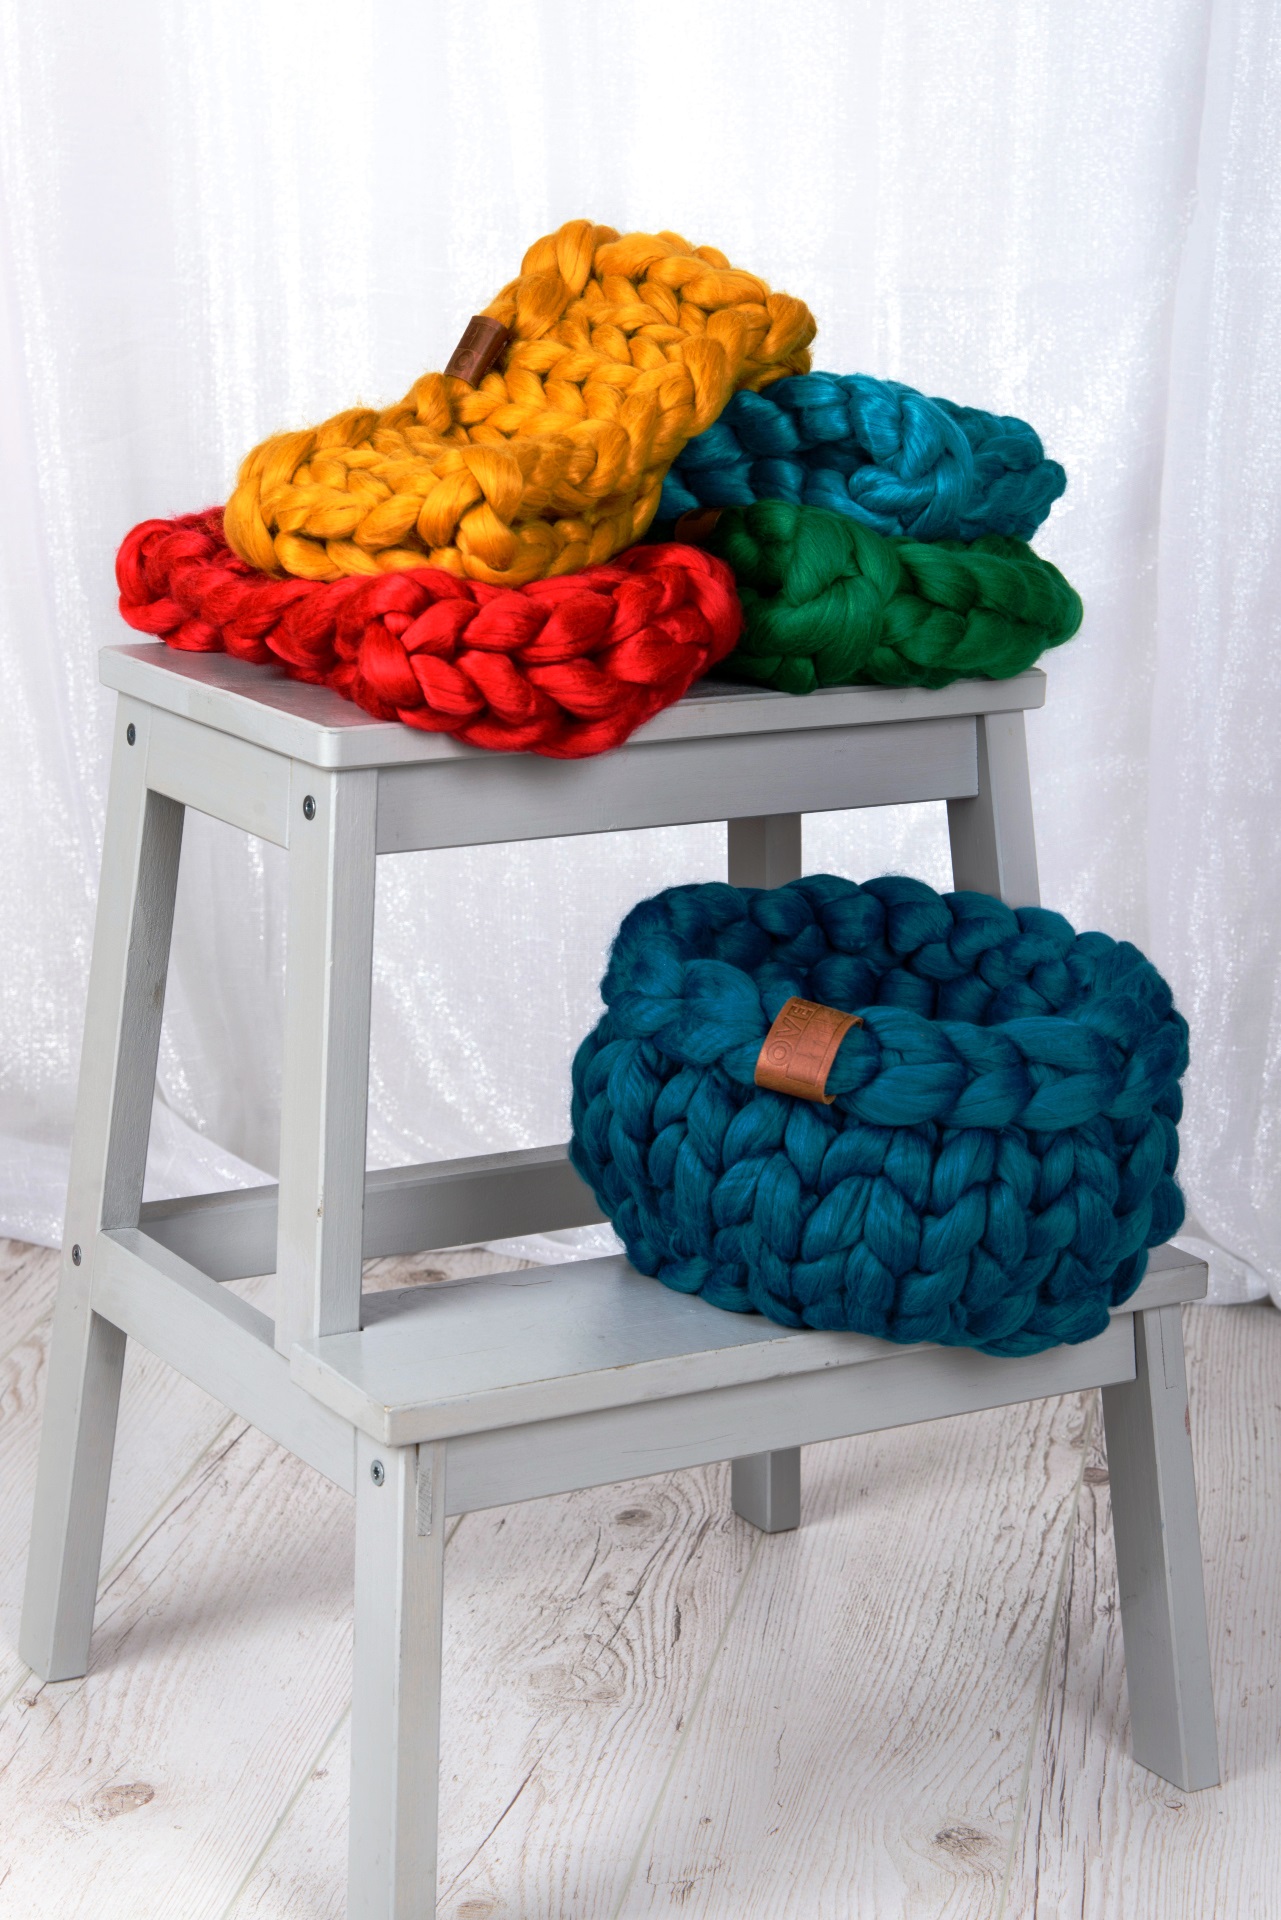 Mi is az giant knitting és arm knitting technika?<br />A termékeket, az alapanyagot és a technikát is nagy érdeklődés kíséri évek óta a külföldi oldalakon, online magazinokban, és mára hazánkban is egyre nagyobb népszerűségre tesz szert. A kezdetek az ausztrál Jacqui Finkhez vezethetőek vissza, aki 2012-ben robbant be luxustakaróival. A giant knitting az extra méretű fonalakkal, extra méretű eszközökkel való kötést jelenti. Ezzel szemben az arm knitting technika vastag fonalak használatával karral törtőnő kötést jelenti. 